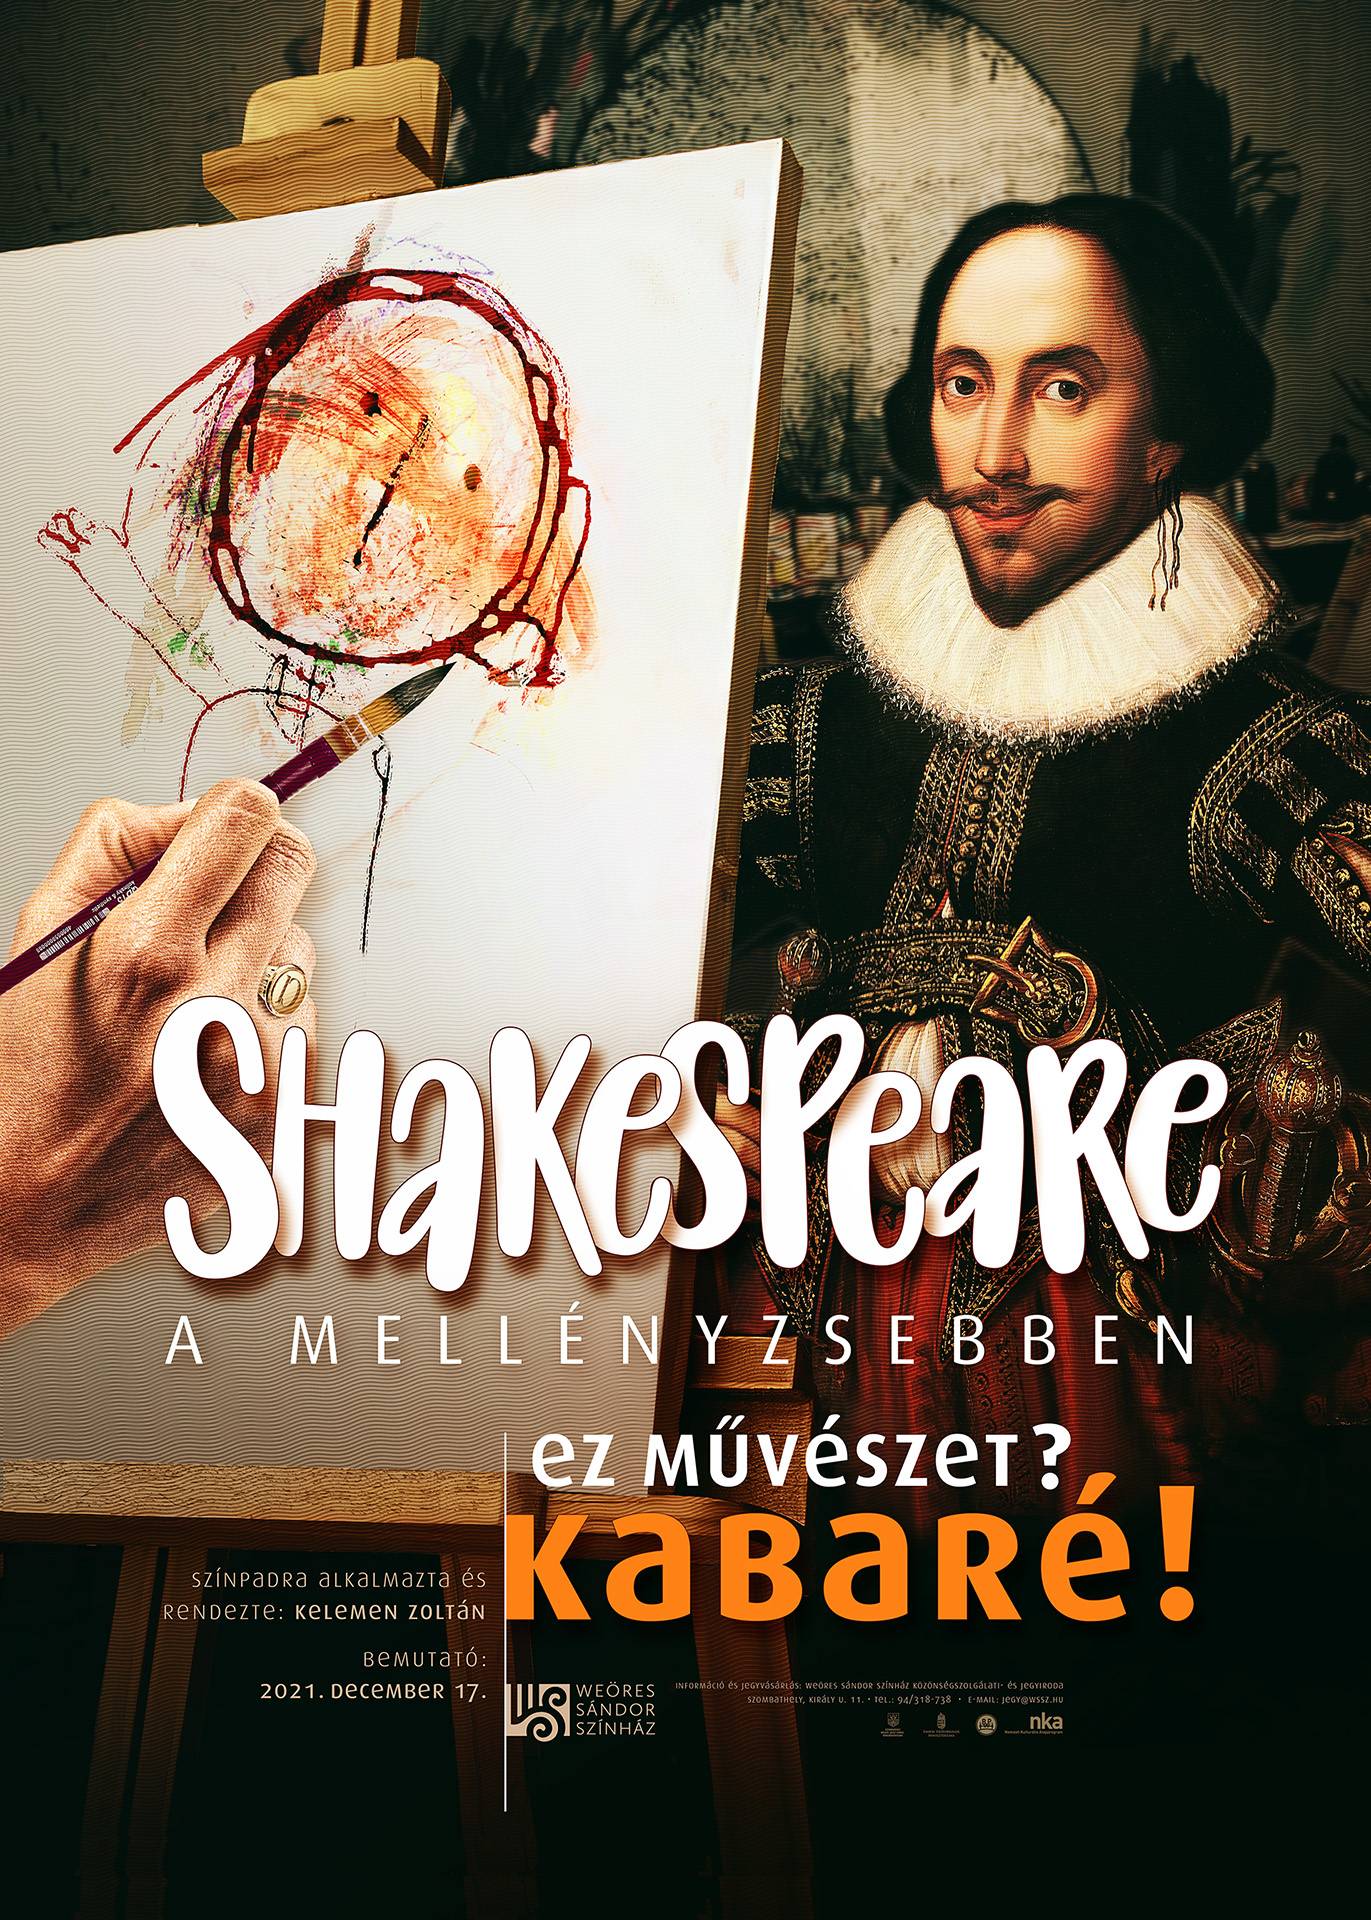 Shakespeare a mellényzsebben fotó: Bonyhádi Károly